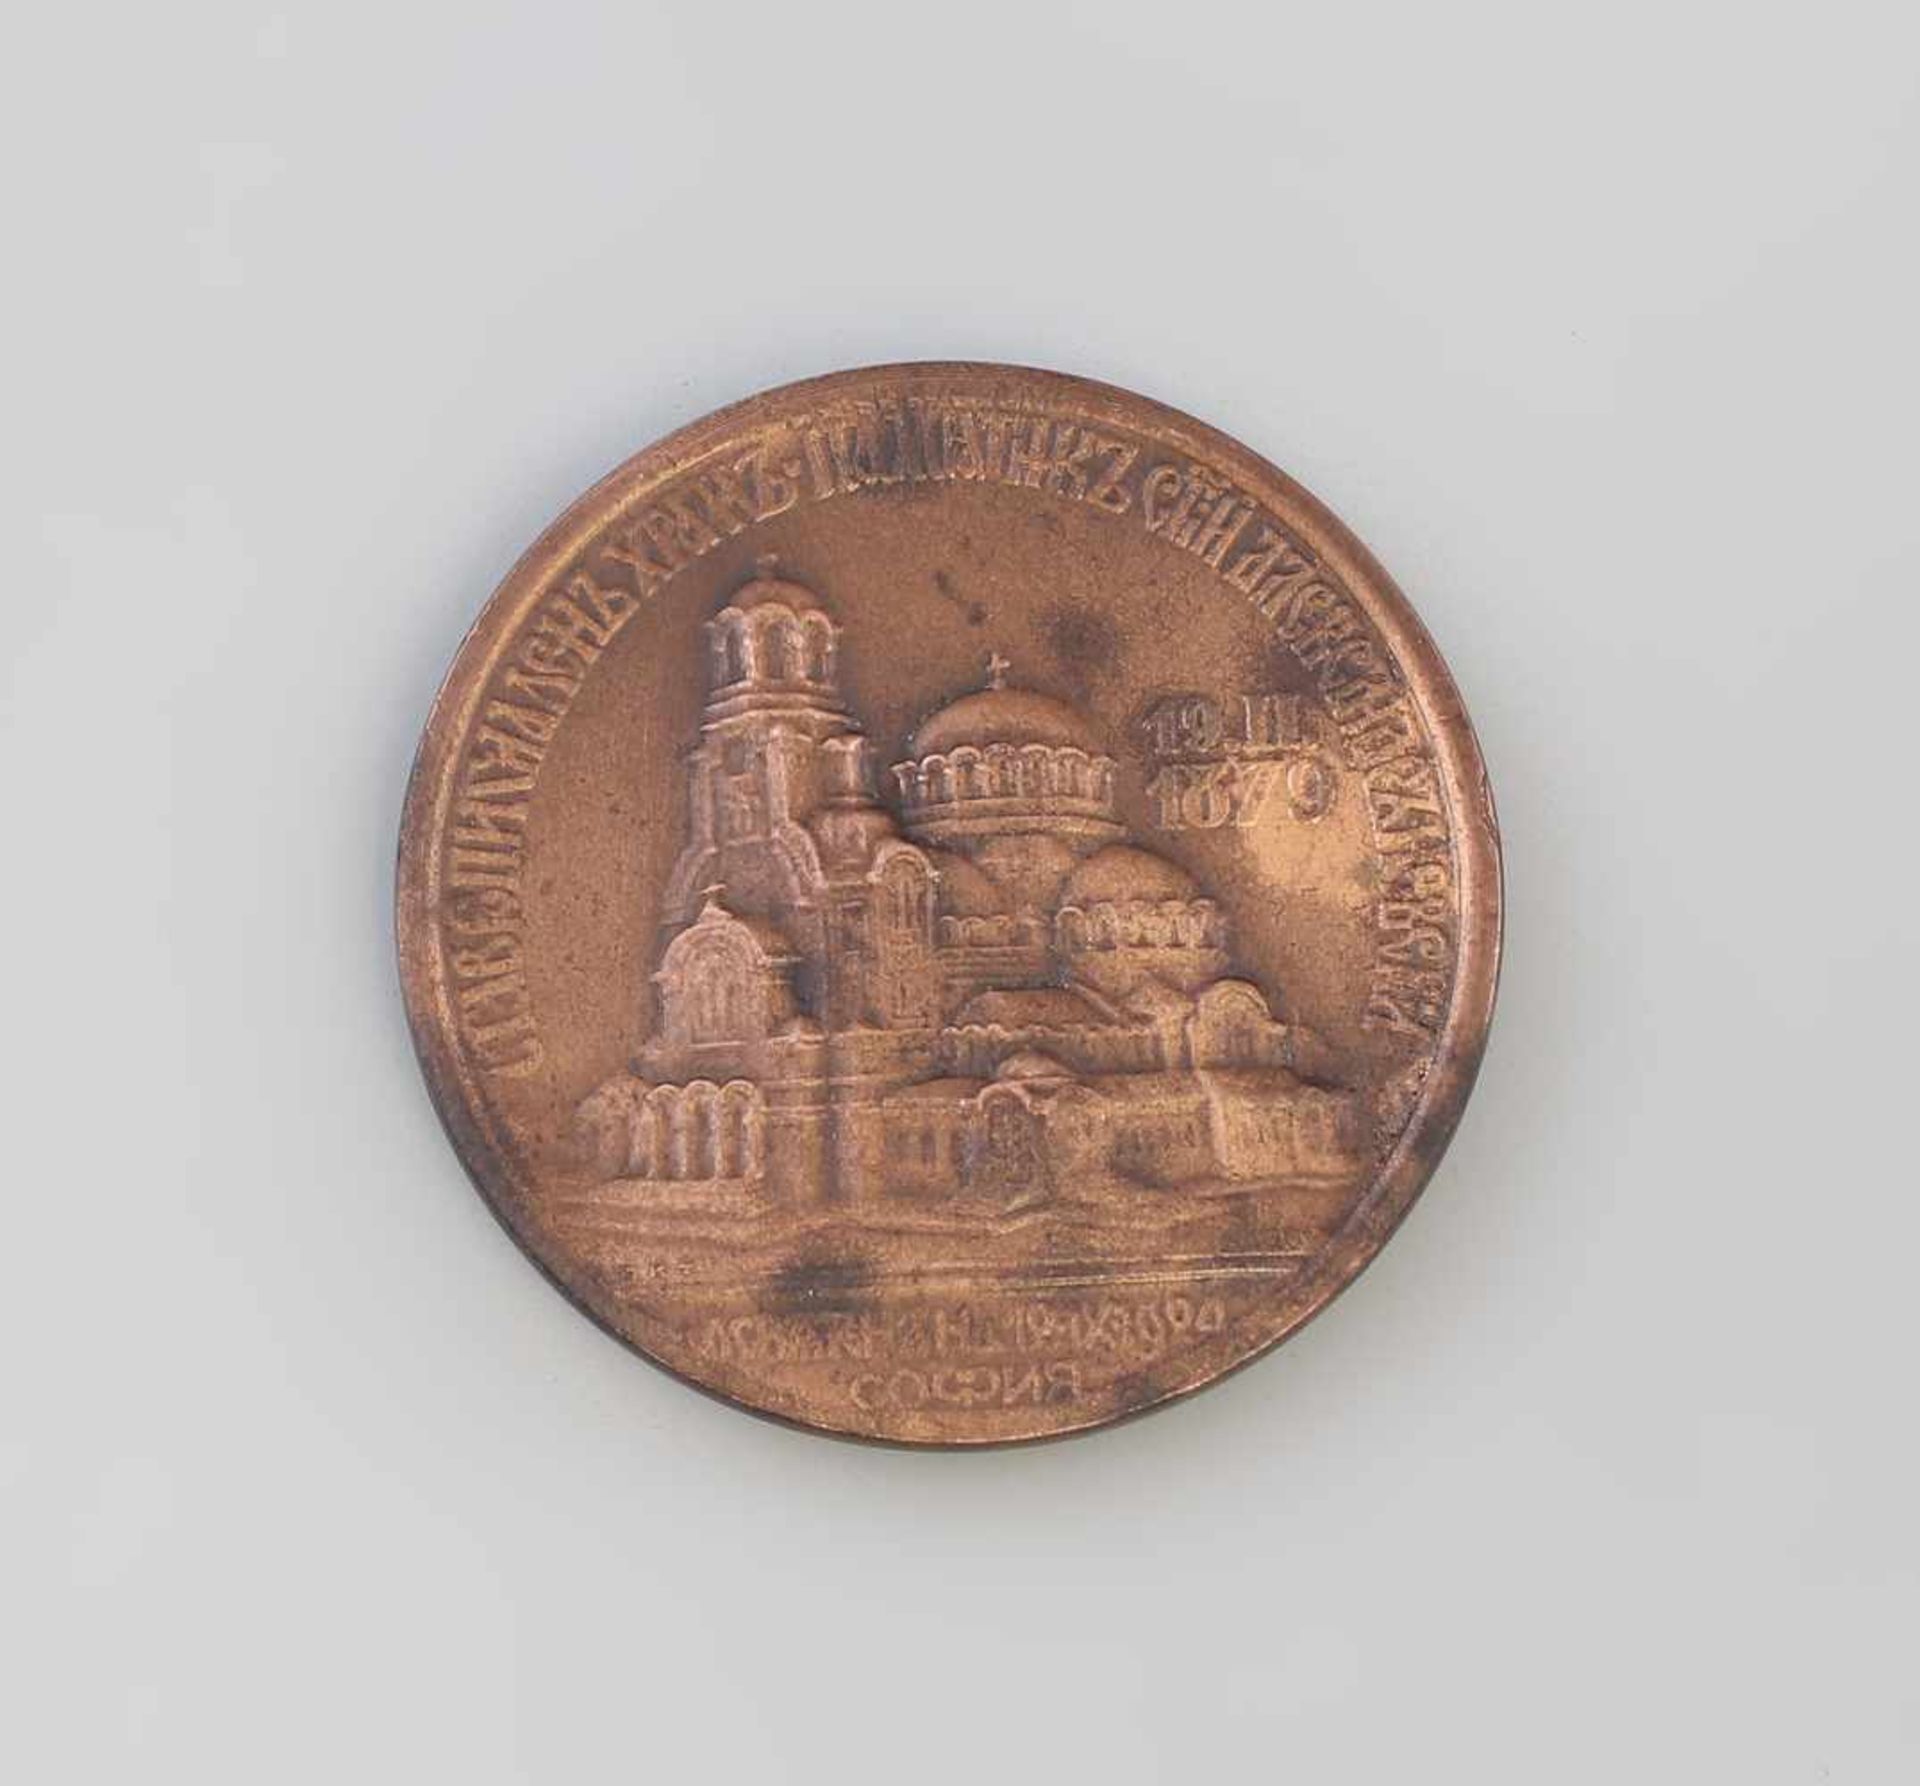 Bulgarische Medaille Alexander Newski Kathedrale 1924bronzefarb. Metall, zur Weihe Alexander- - Bild 2 aus 2